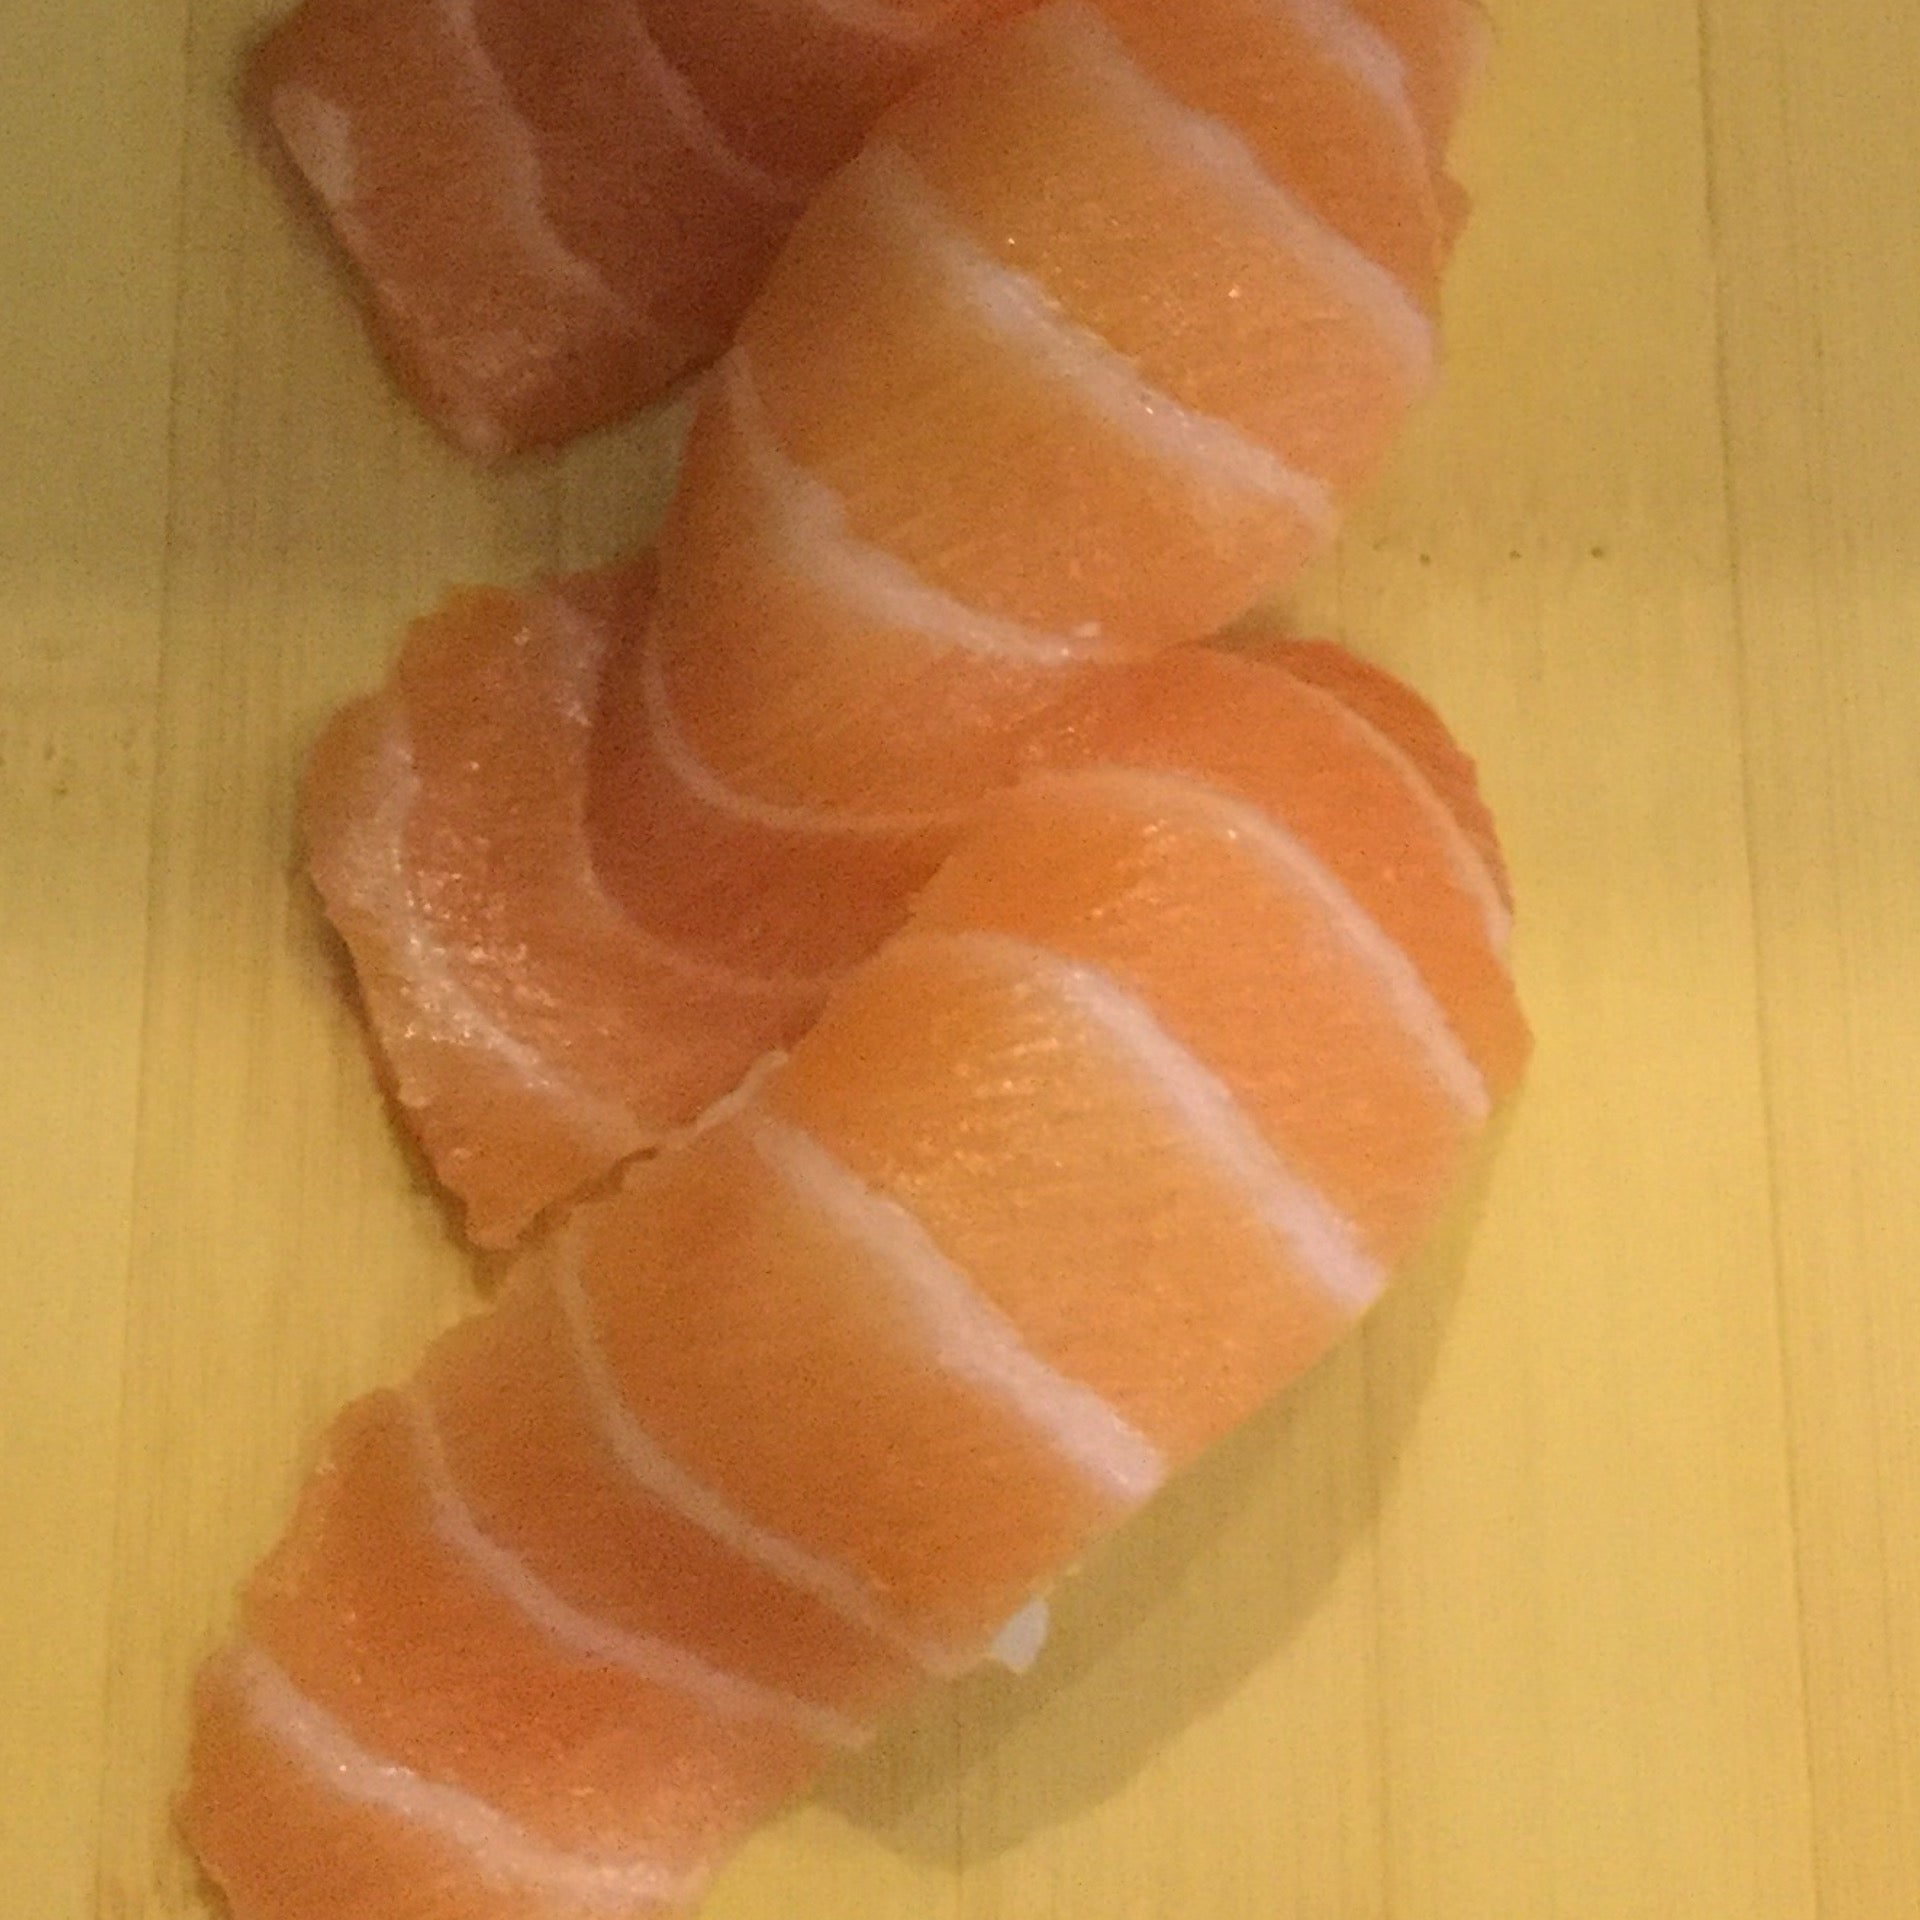 sake salmon sushi